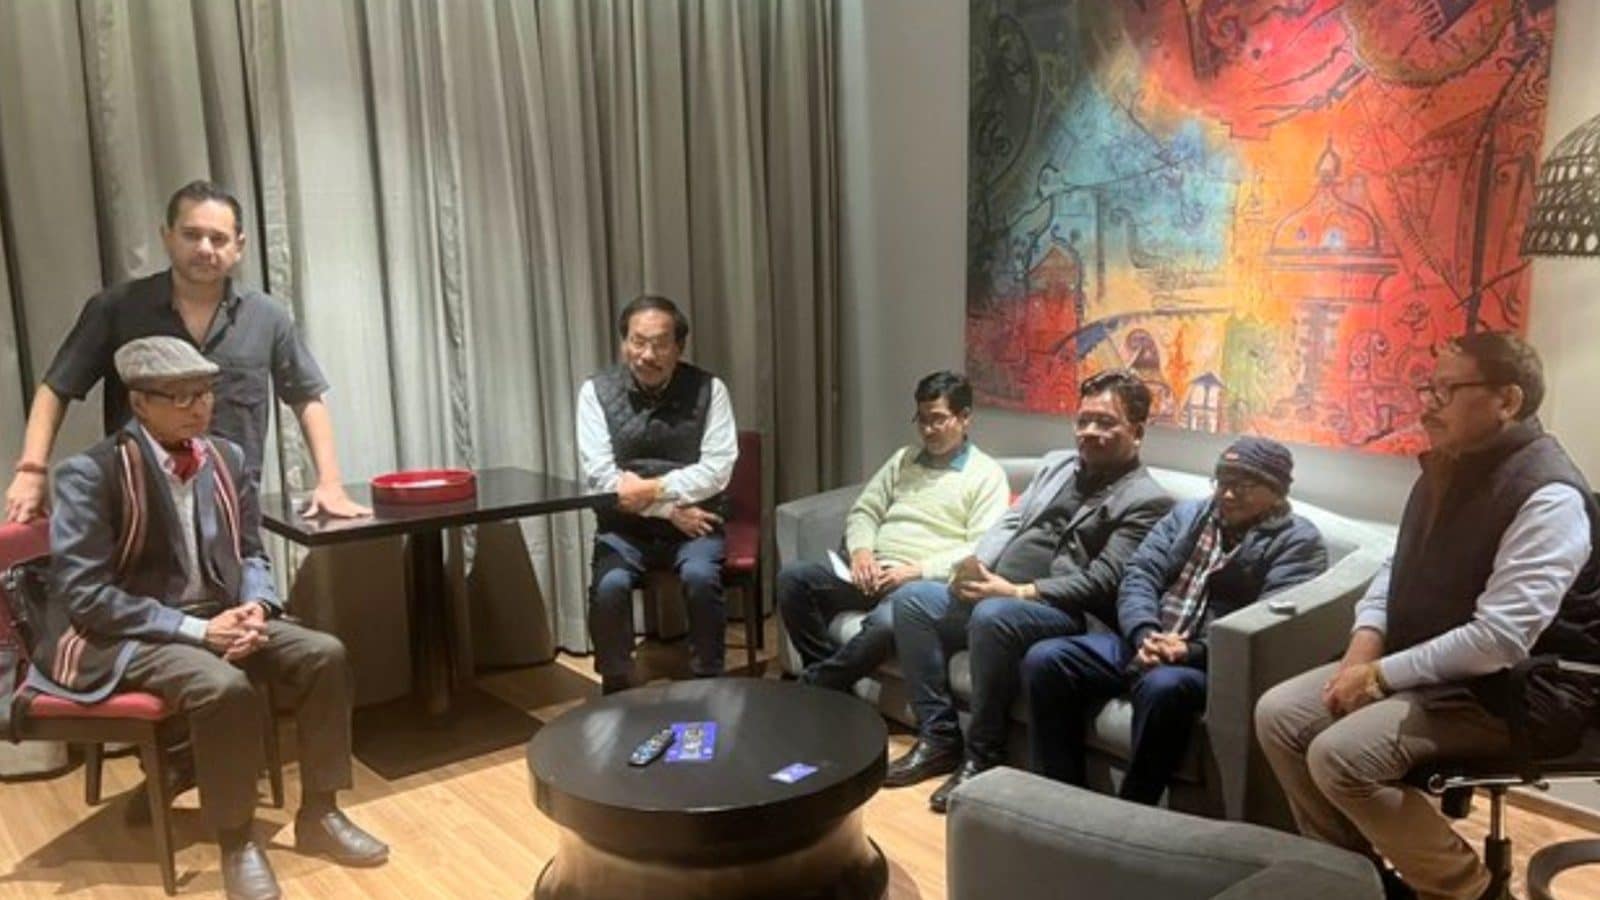 त्रिपुरा चुनाव से पहले, भाजपा की सहयोगी IPFT ने विलय की अफवाहों के बीच TIPRA पार्टी के नेताओं के साथ ‘बंद कमरे’ में बैठक की